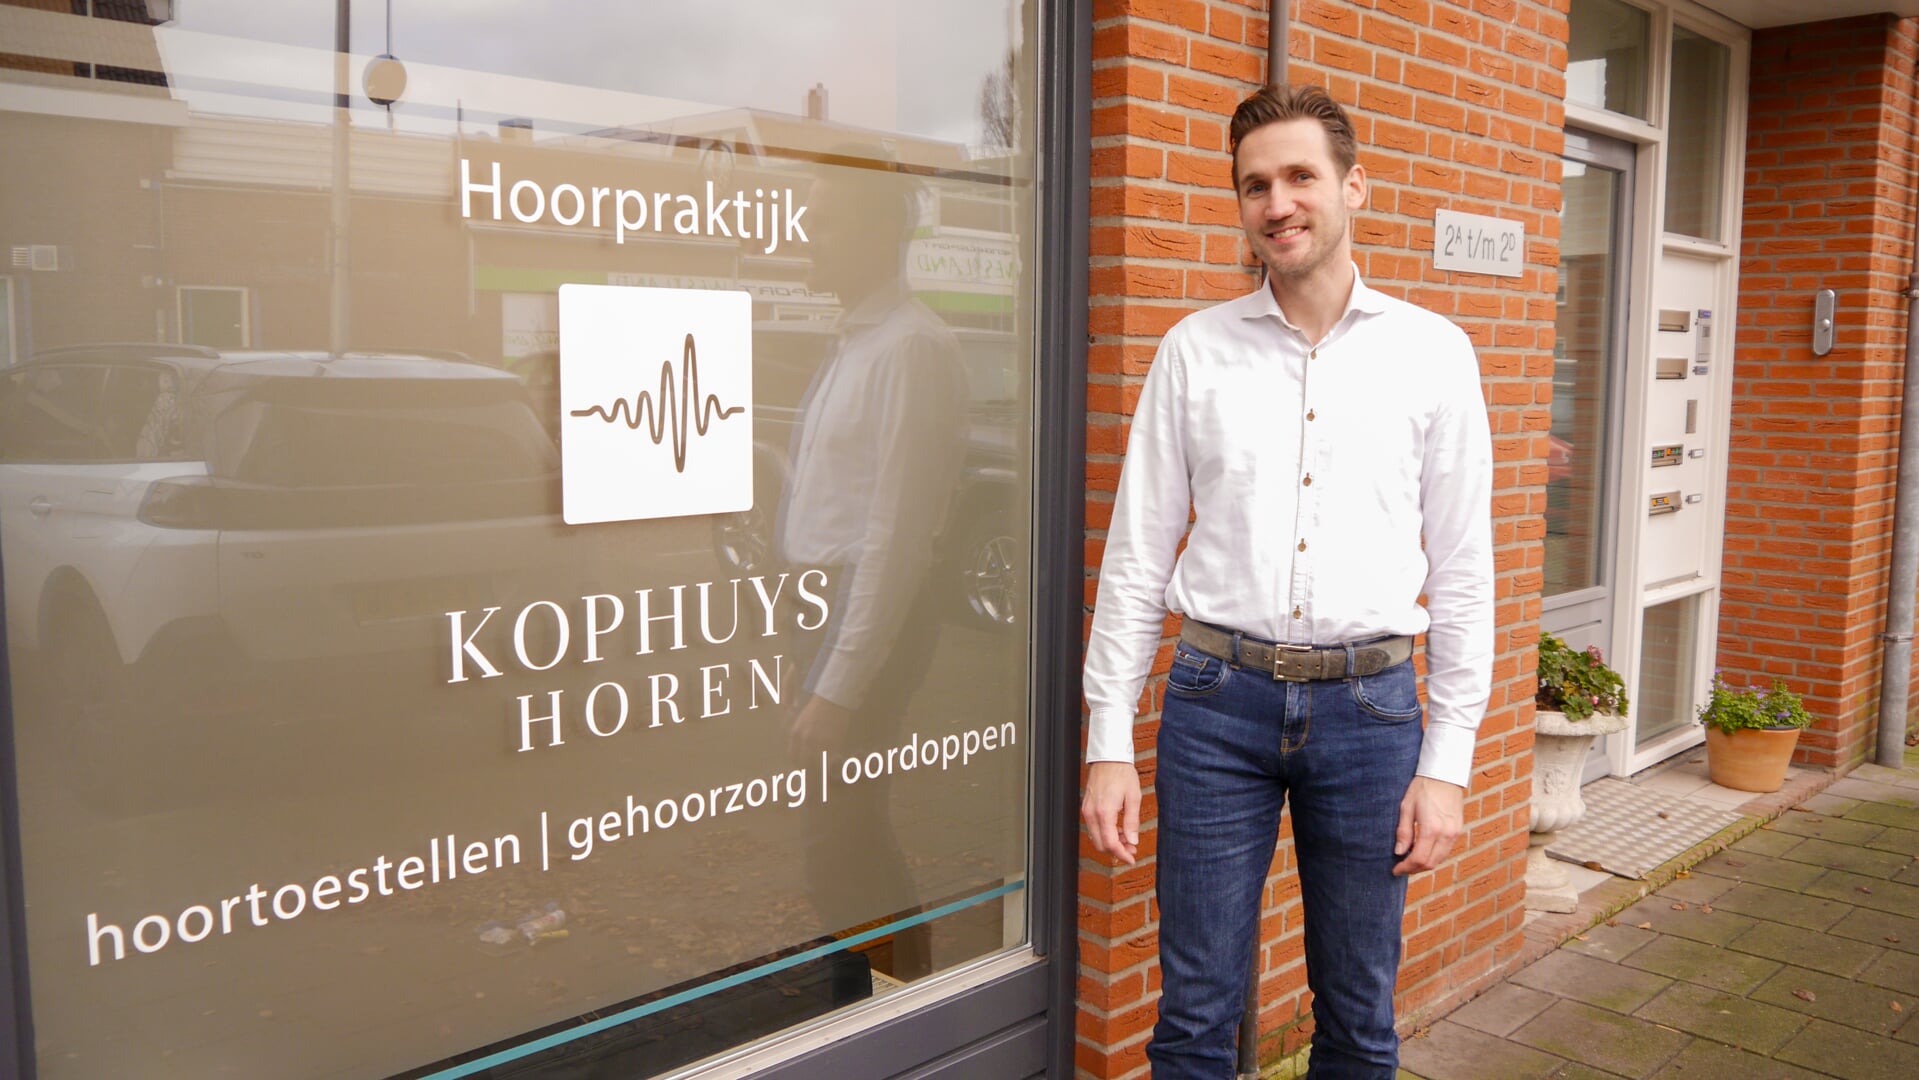 Om de service nog verder te verbeteren, heeft Jos Koppenaal een praktijkruimte van Kophuys Horen geopend aan de Herenstraat 19 in Monster. 